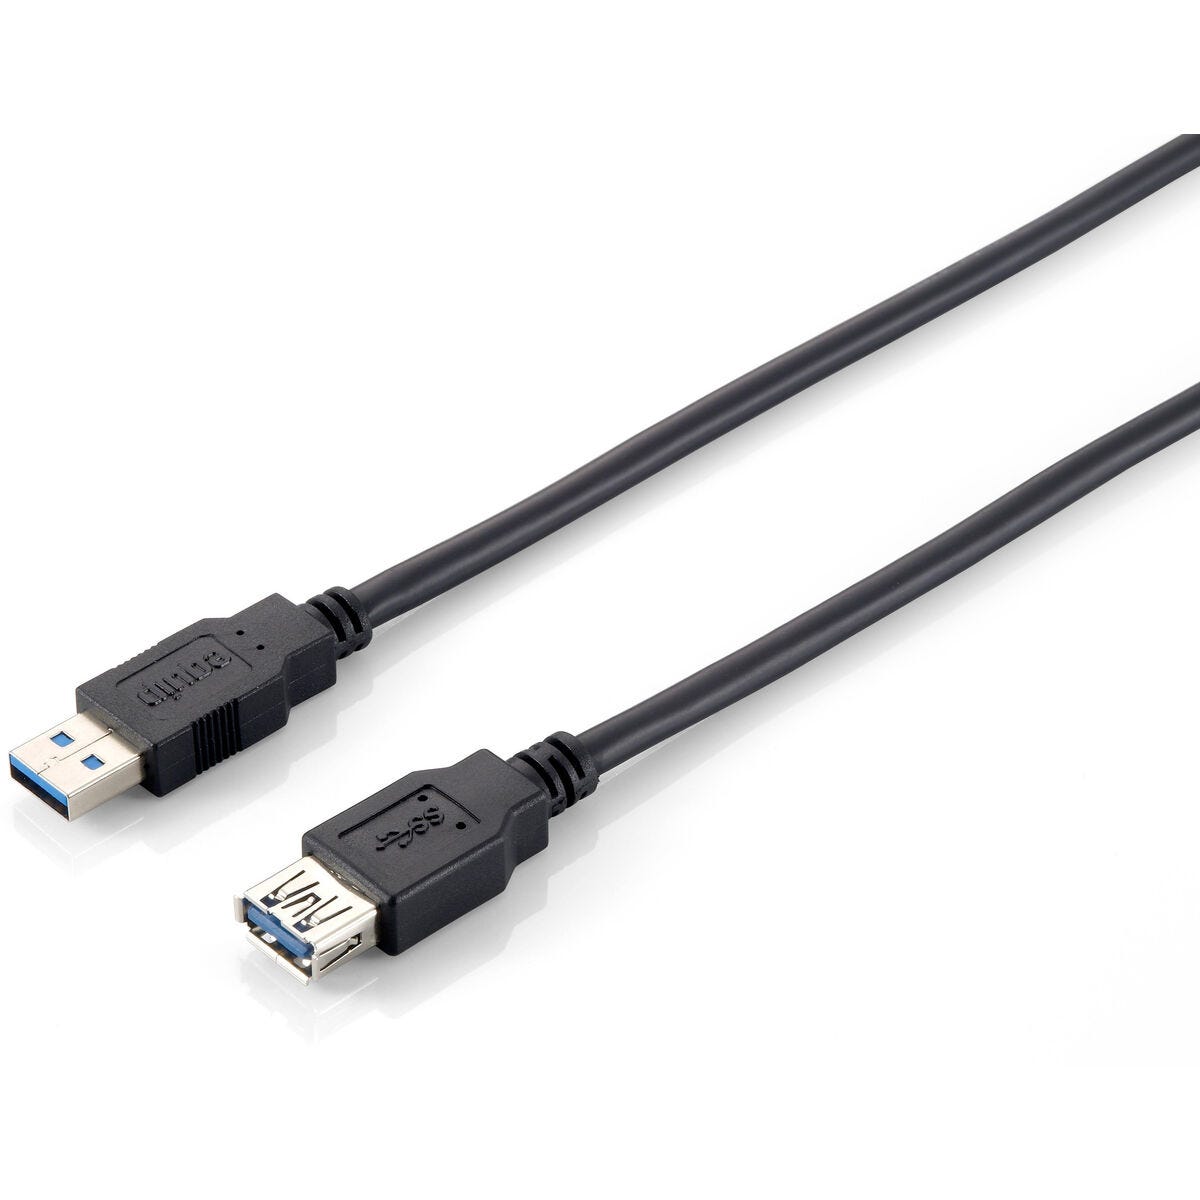 Cable Alargador USB Equip 128399 3 m